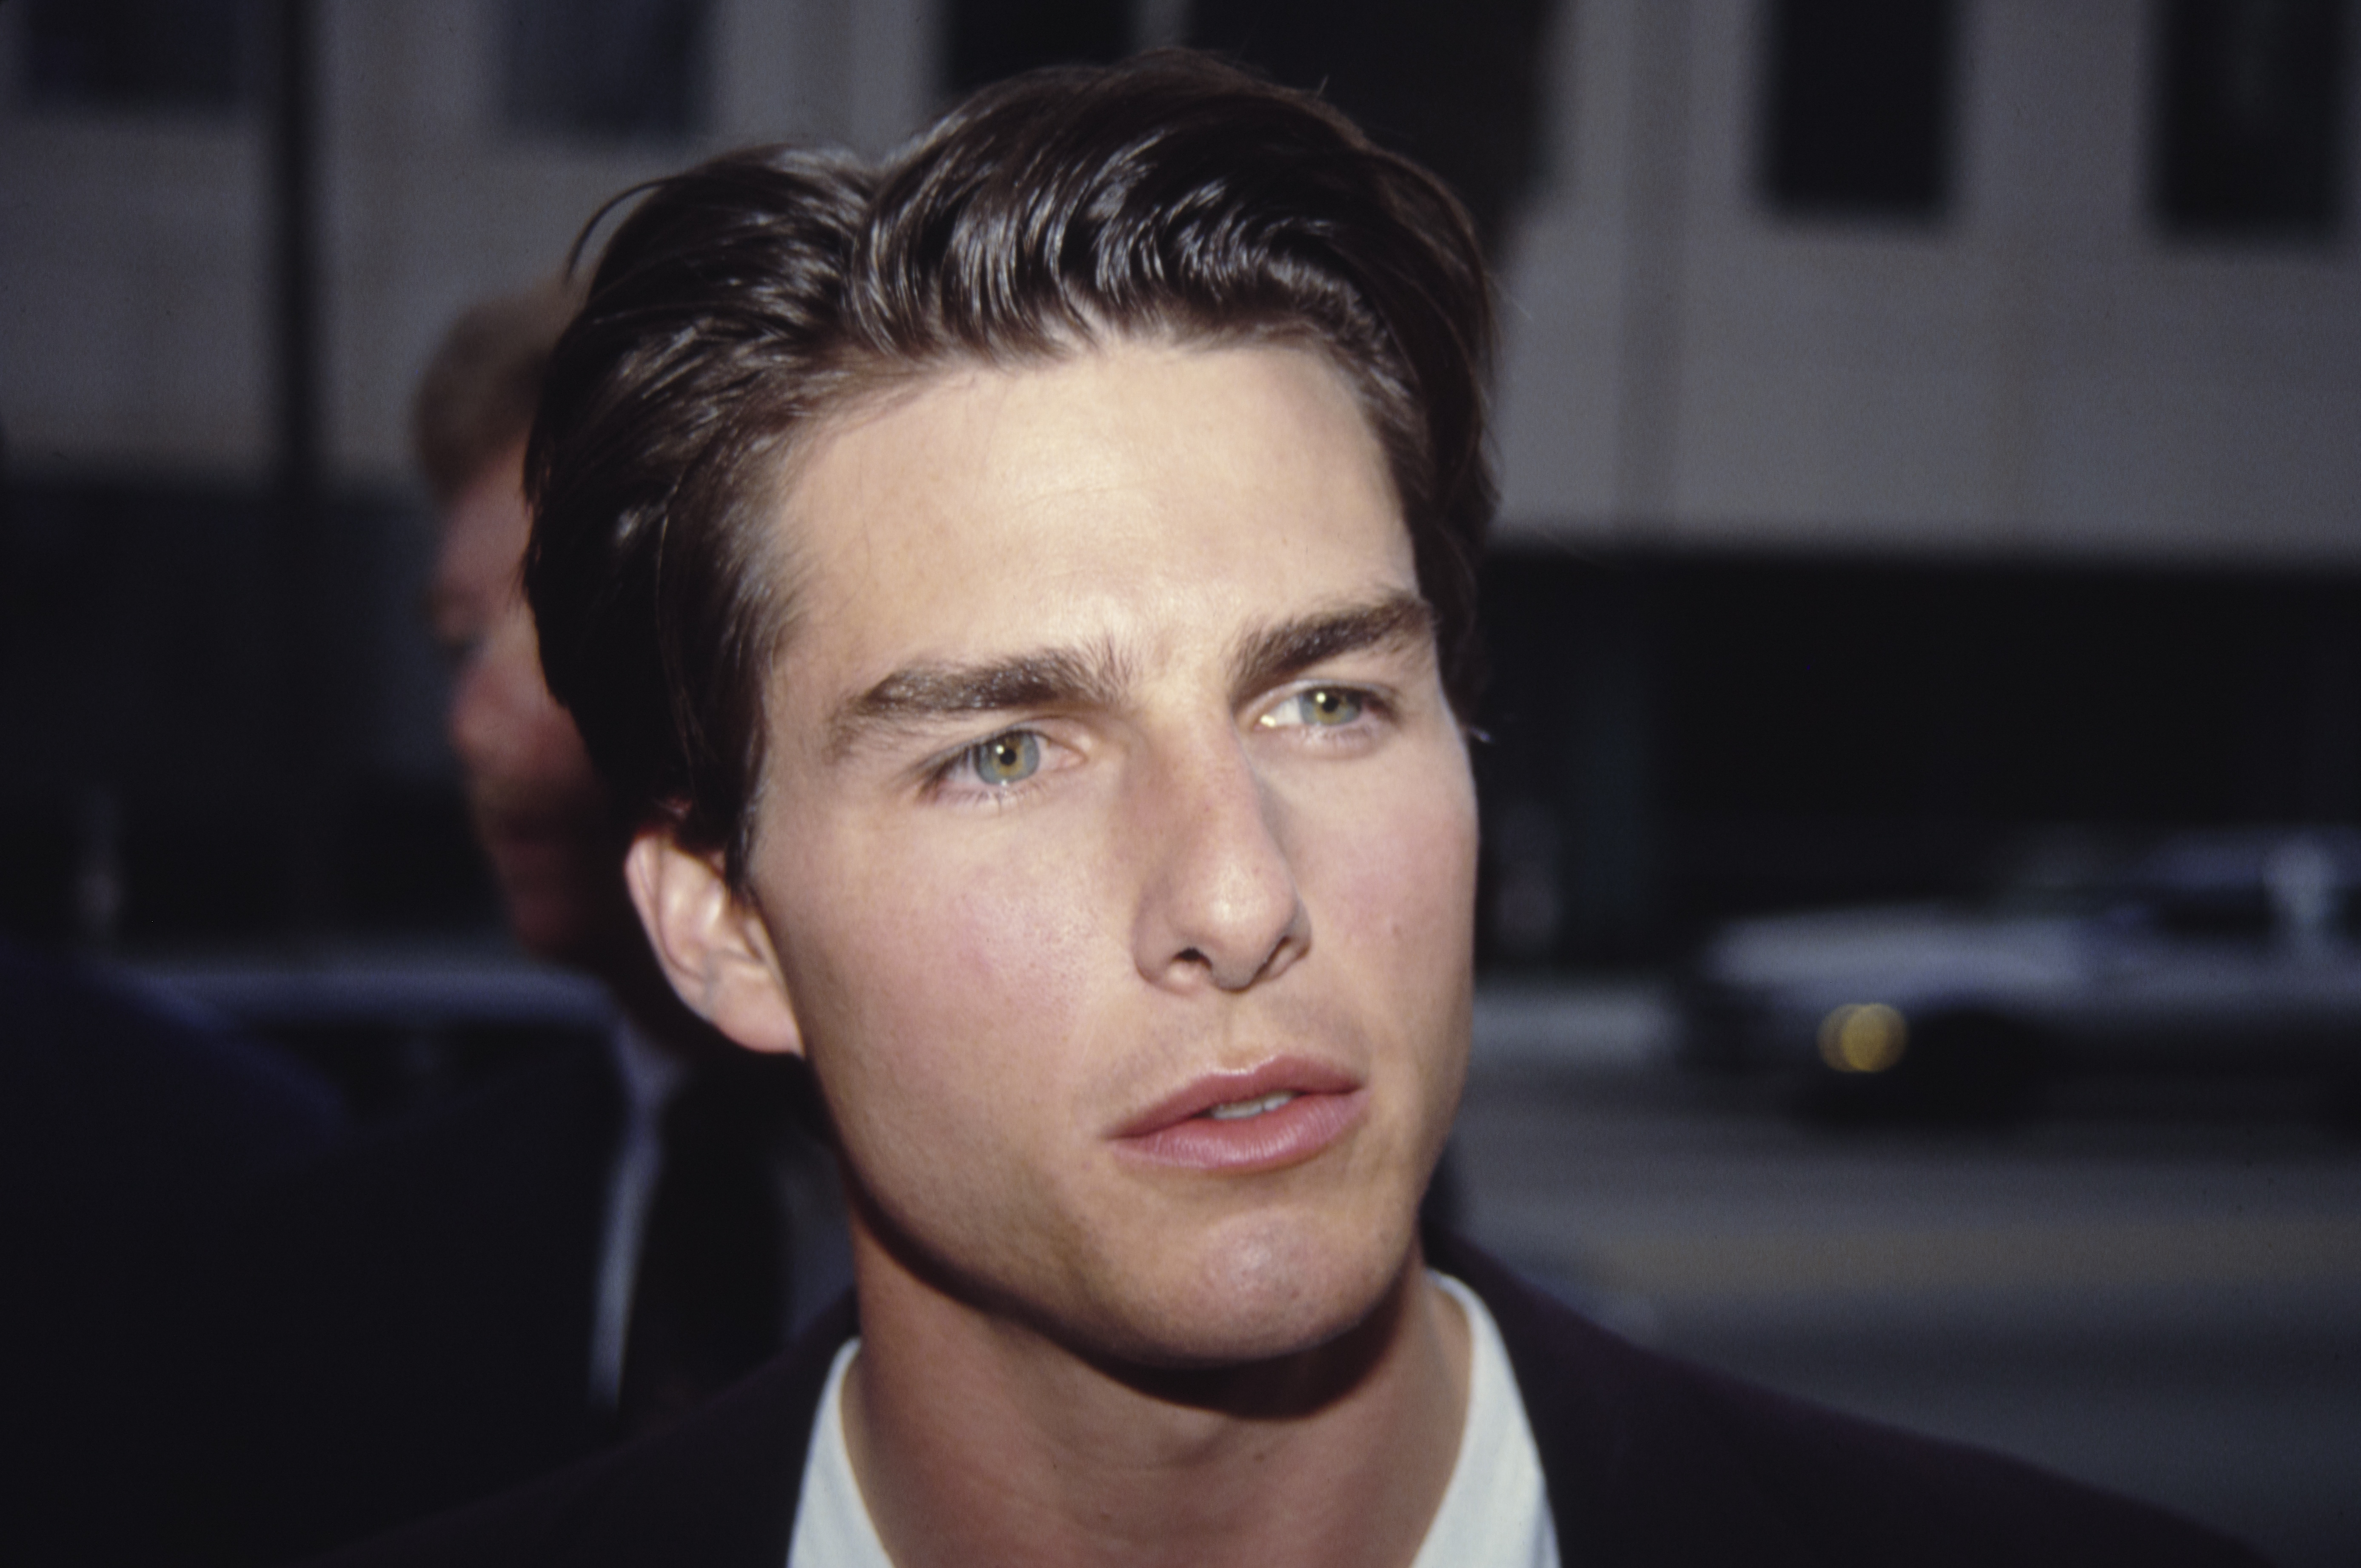 Tom Cruise bei einer Veranstaltung in den 1980er Jahren | Quelle: Getty Images